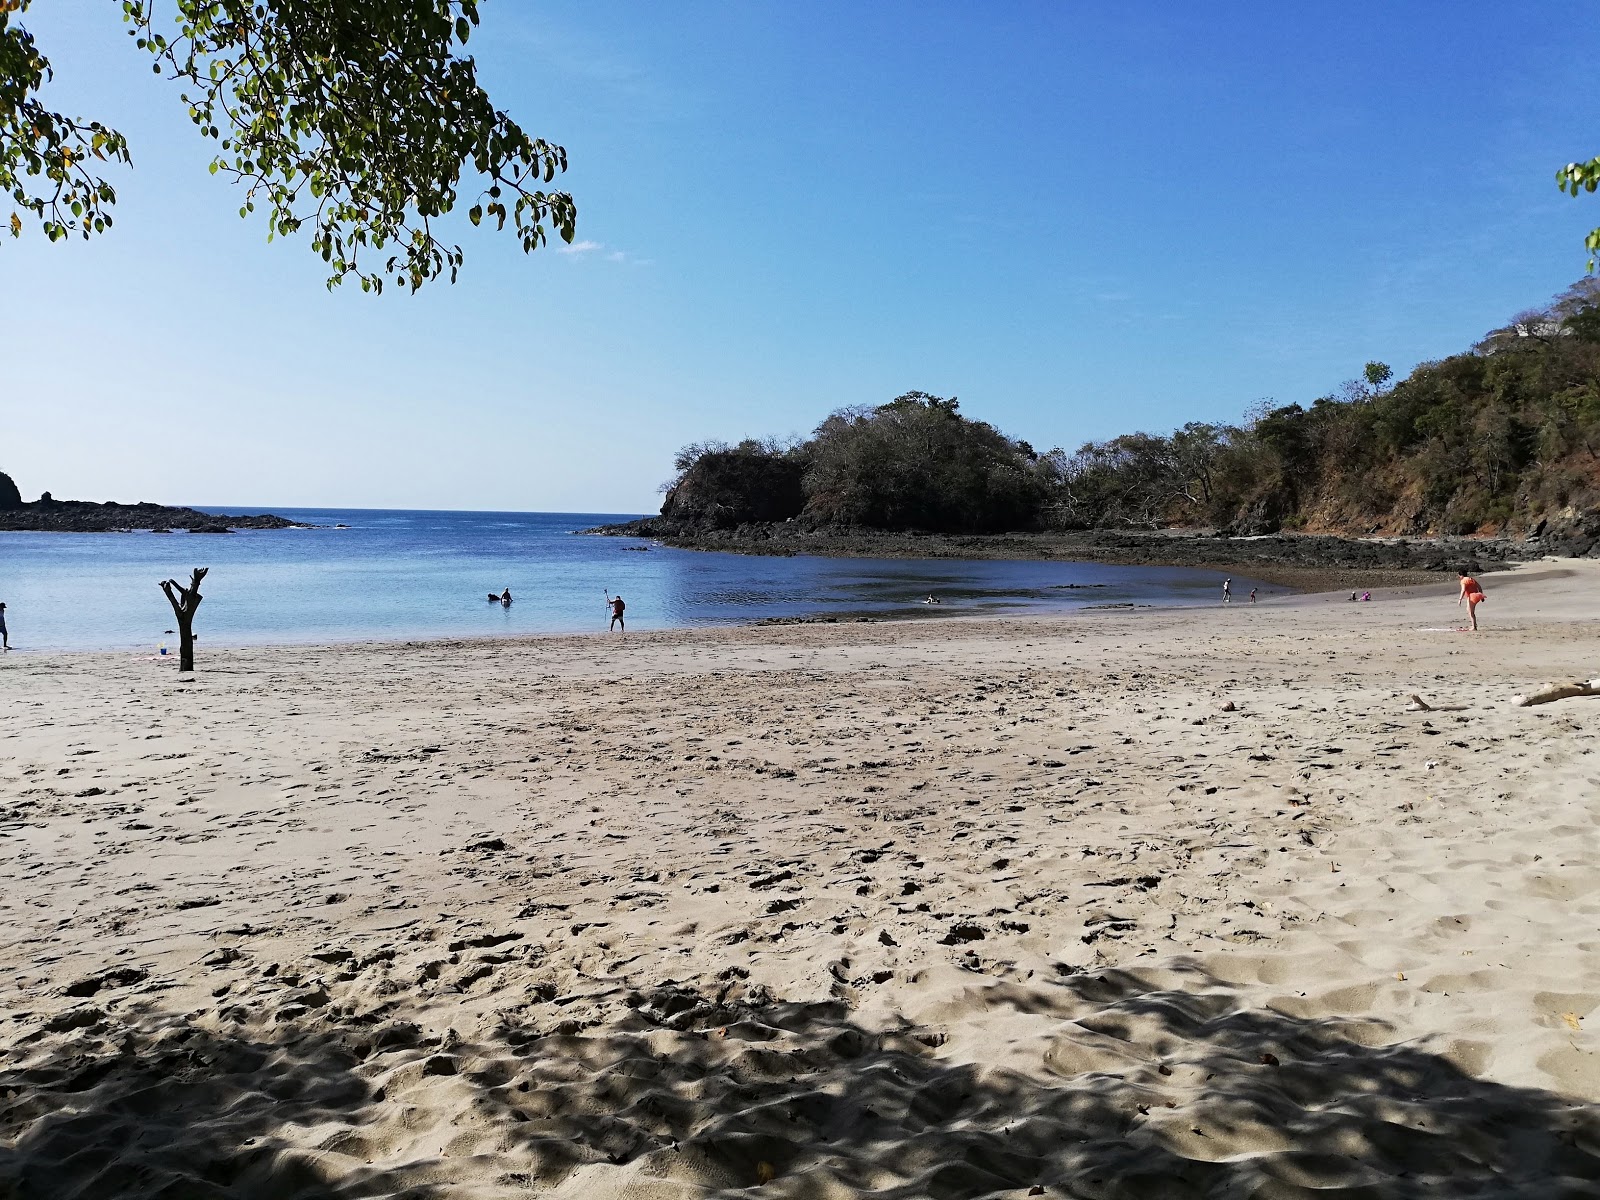 Foto di Achotines Beach ubicato in zona naturale